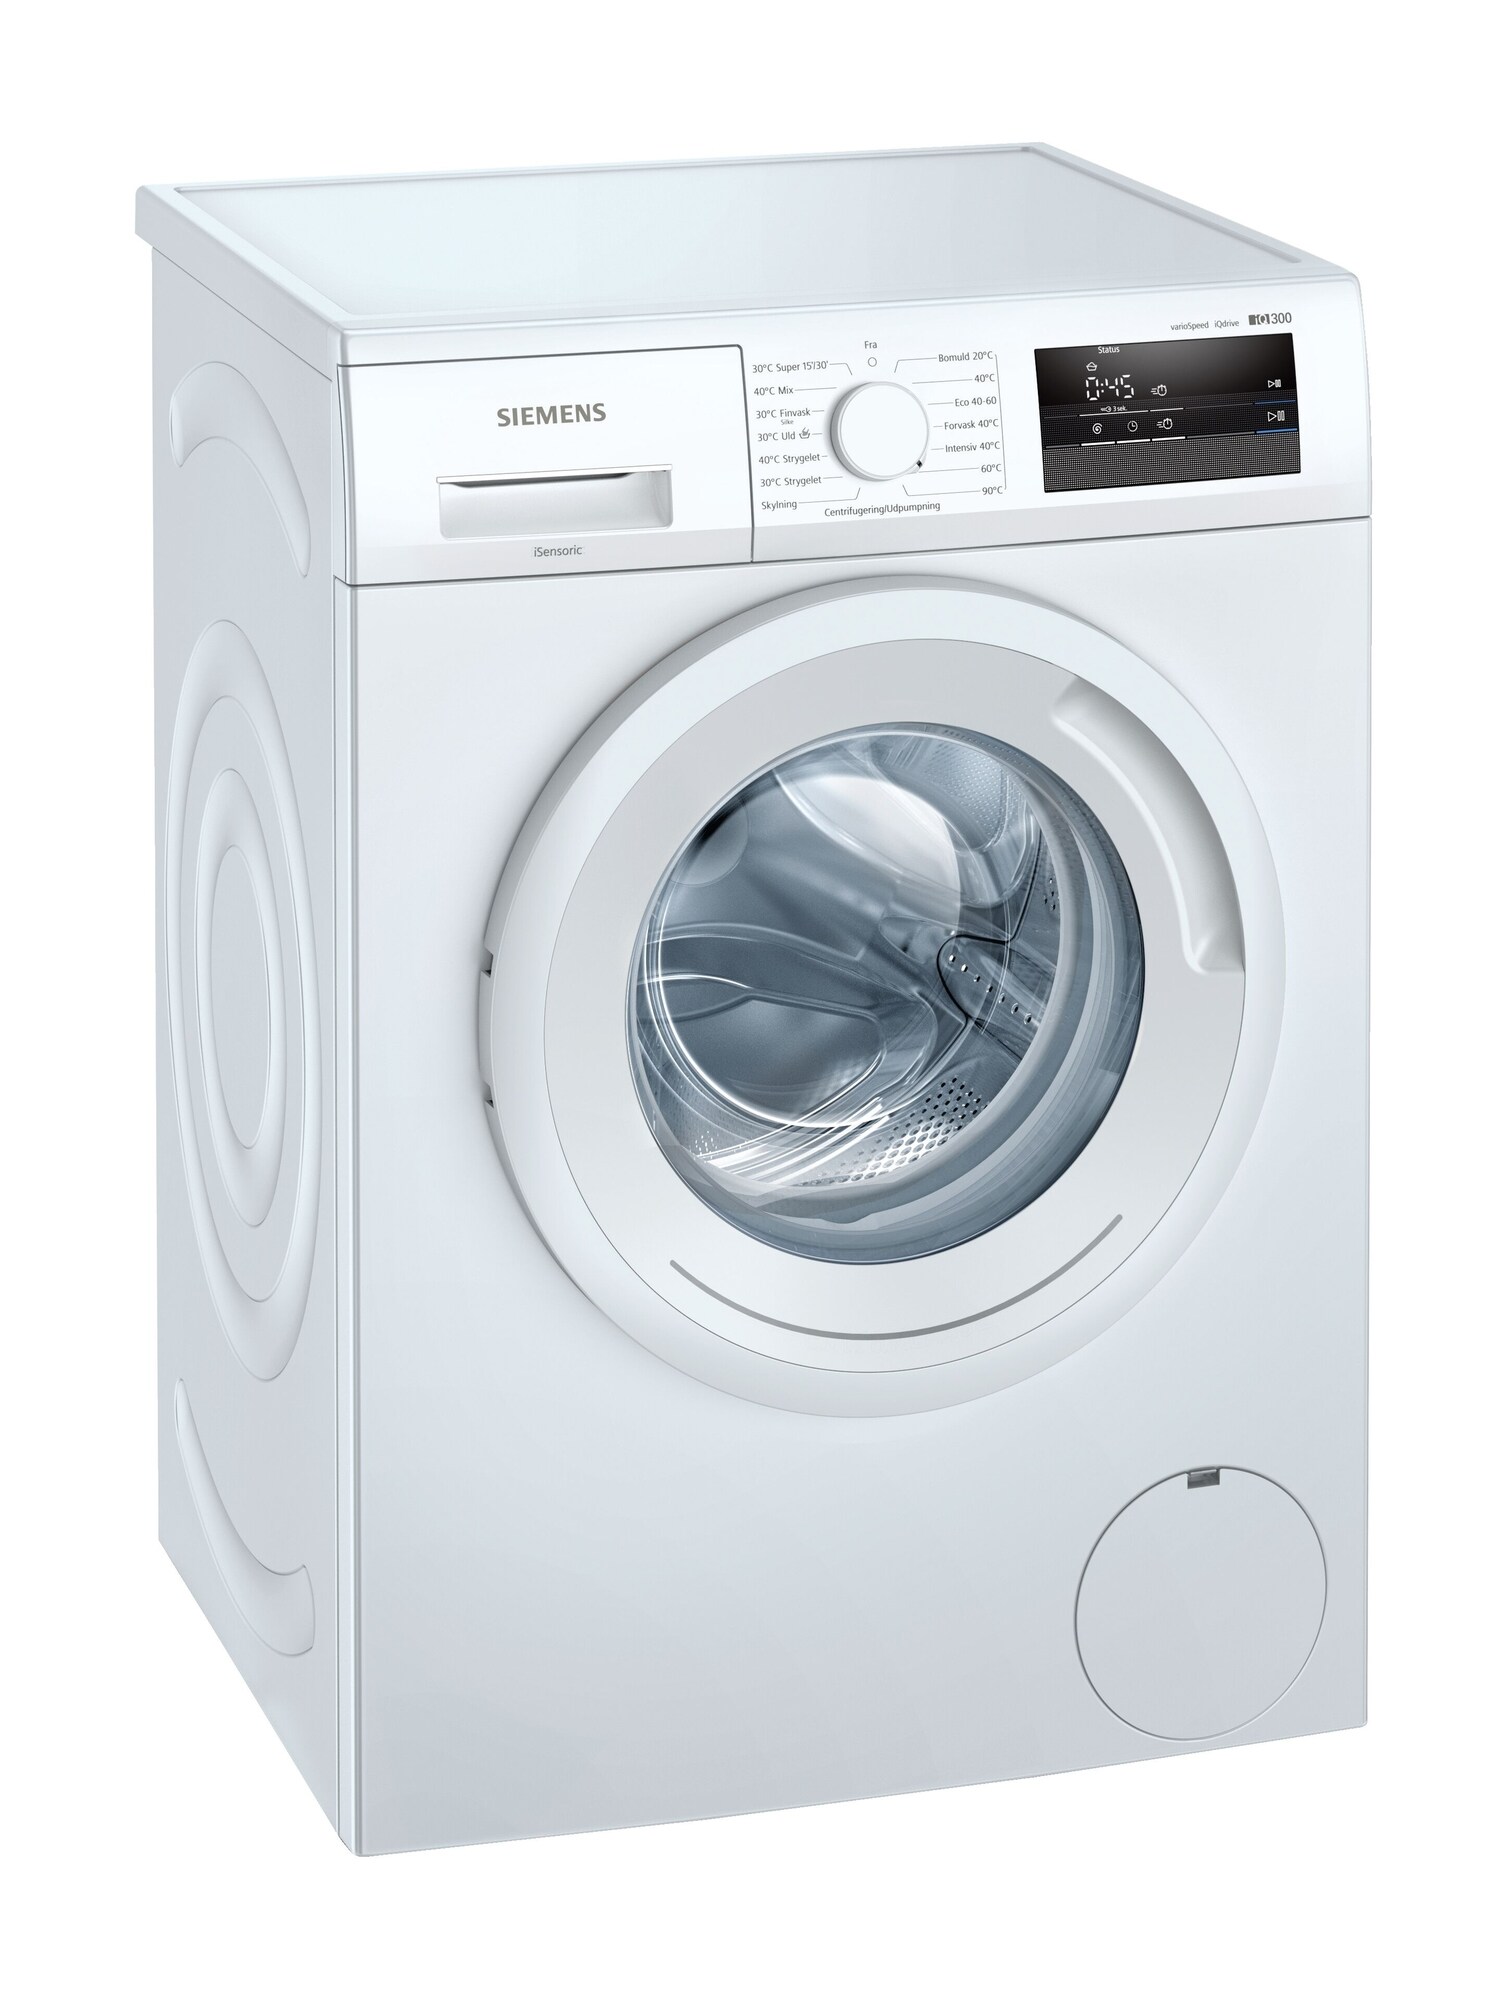 Køb Hvide Vaskemaskiner online til meget lav pris!